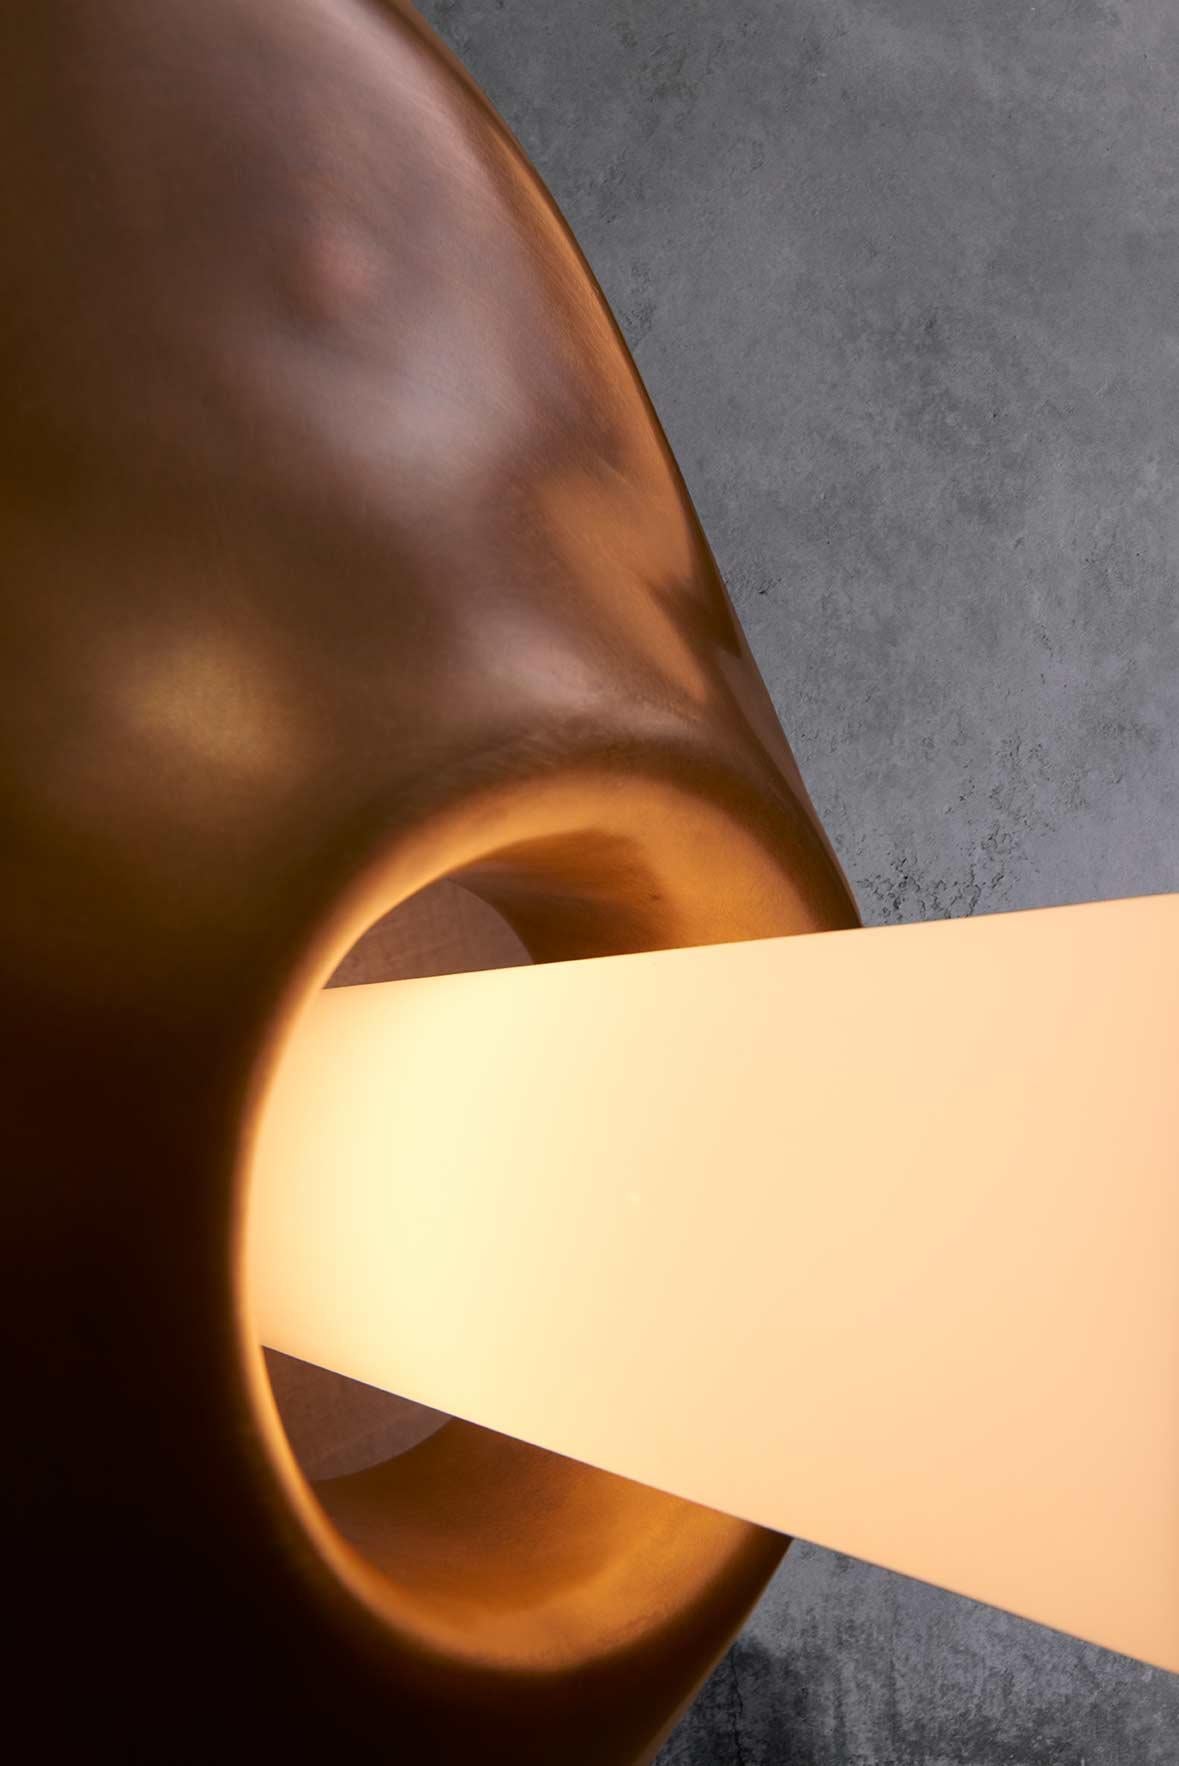 La sculpture en argile est coulée en bronze, le verre soufflé à la main est ensuite ajouté pour compléter cette forme lumineuse sculpturale. Disponible sous forme d'applique ou de suspension. Montré ici comme une applique.

Matériaux : Bronze,